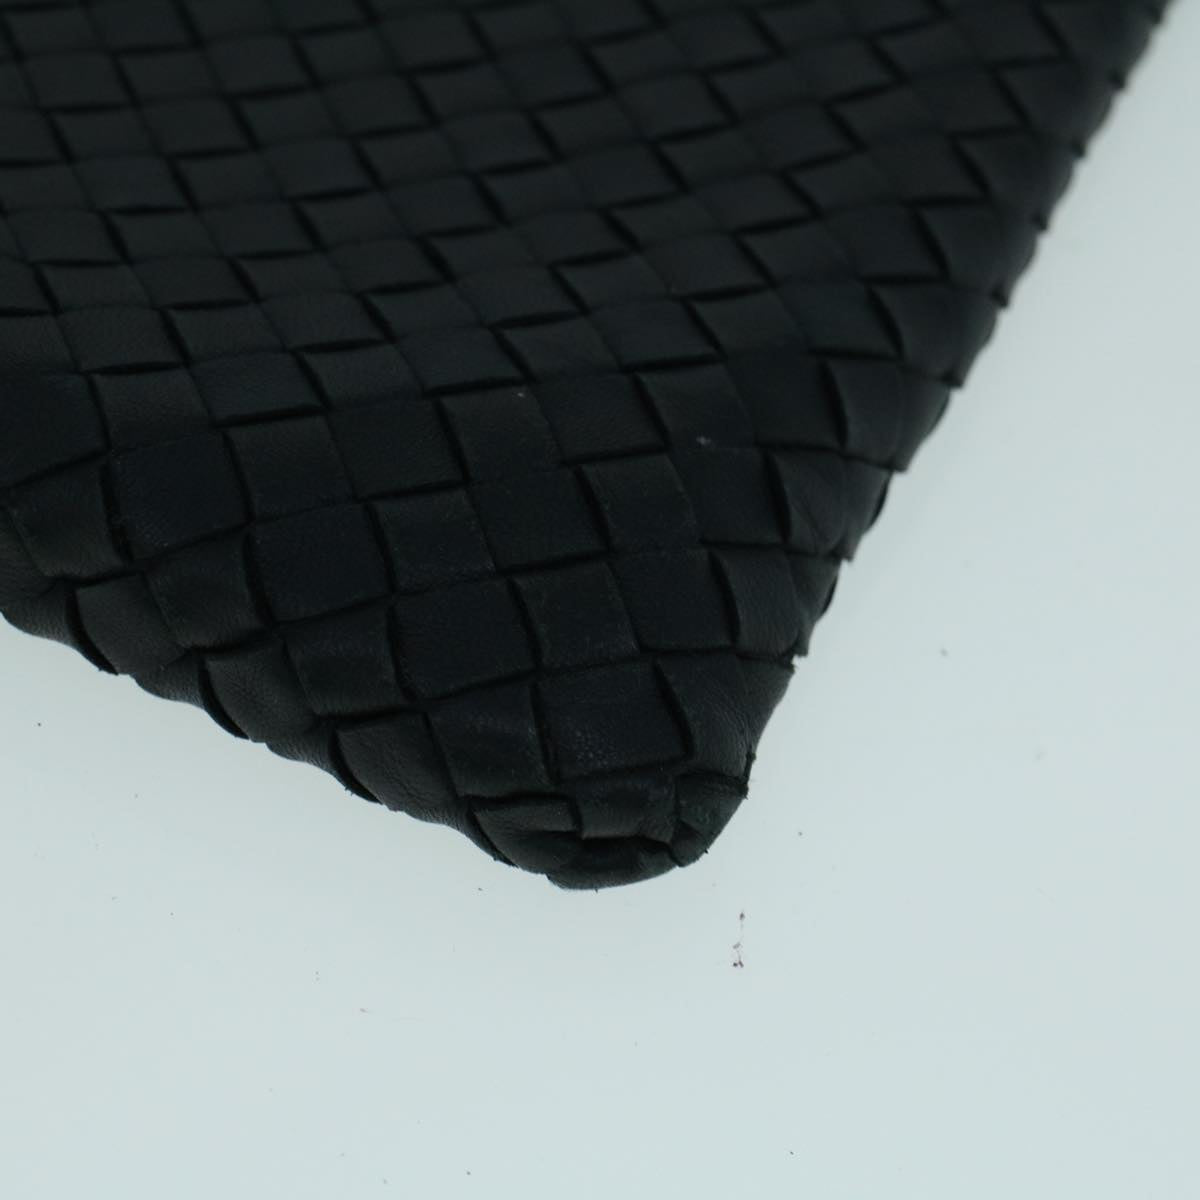 BOTTEGA VENETA INTRECCIATO Clutch Bag Leather Black Auth 57184